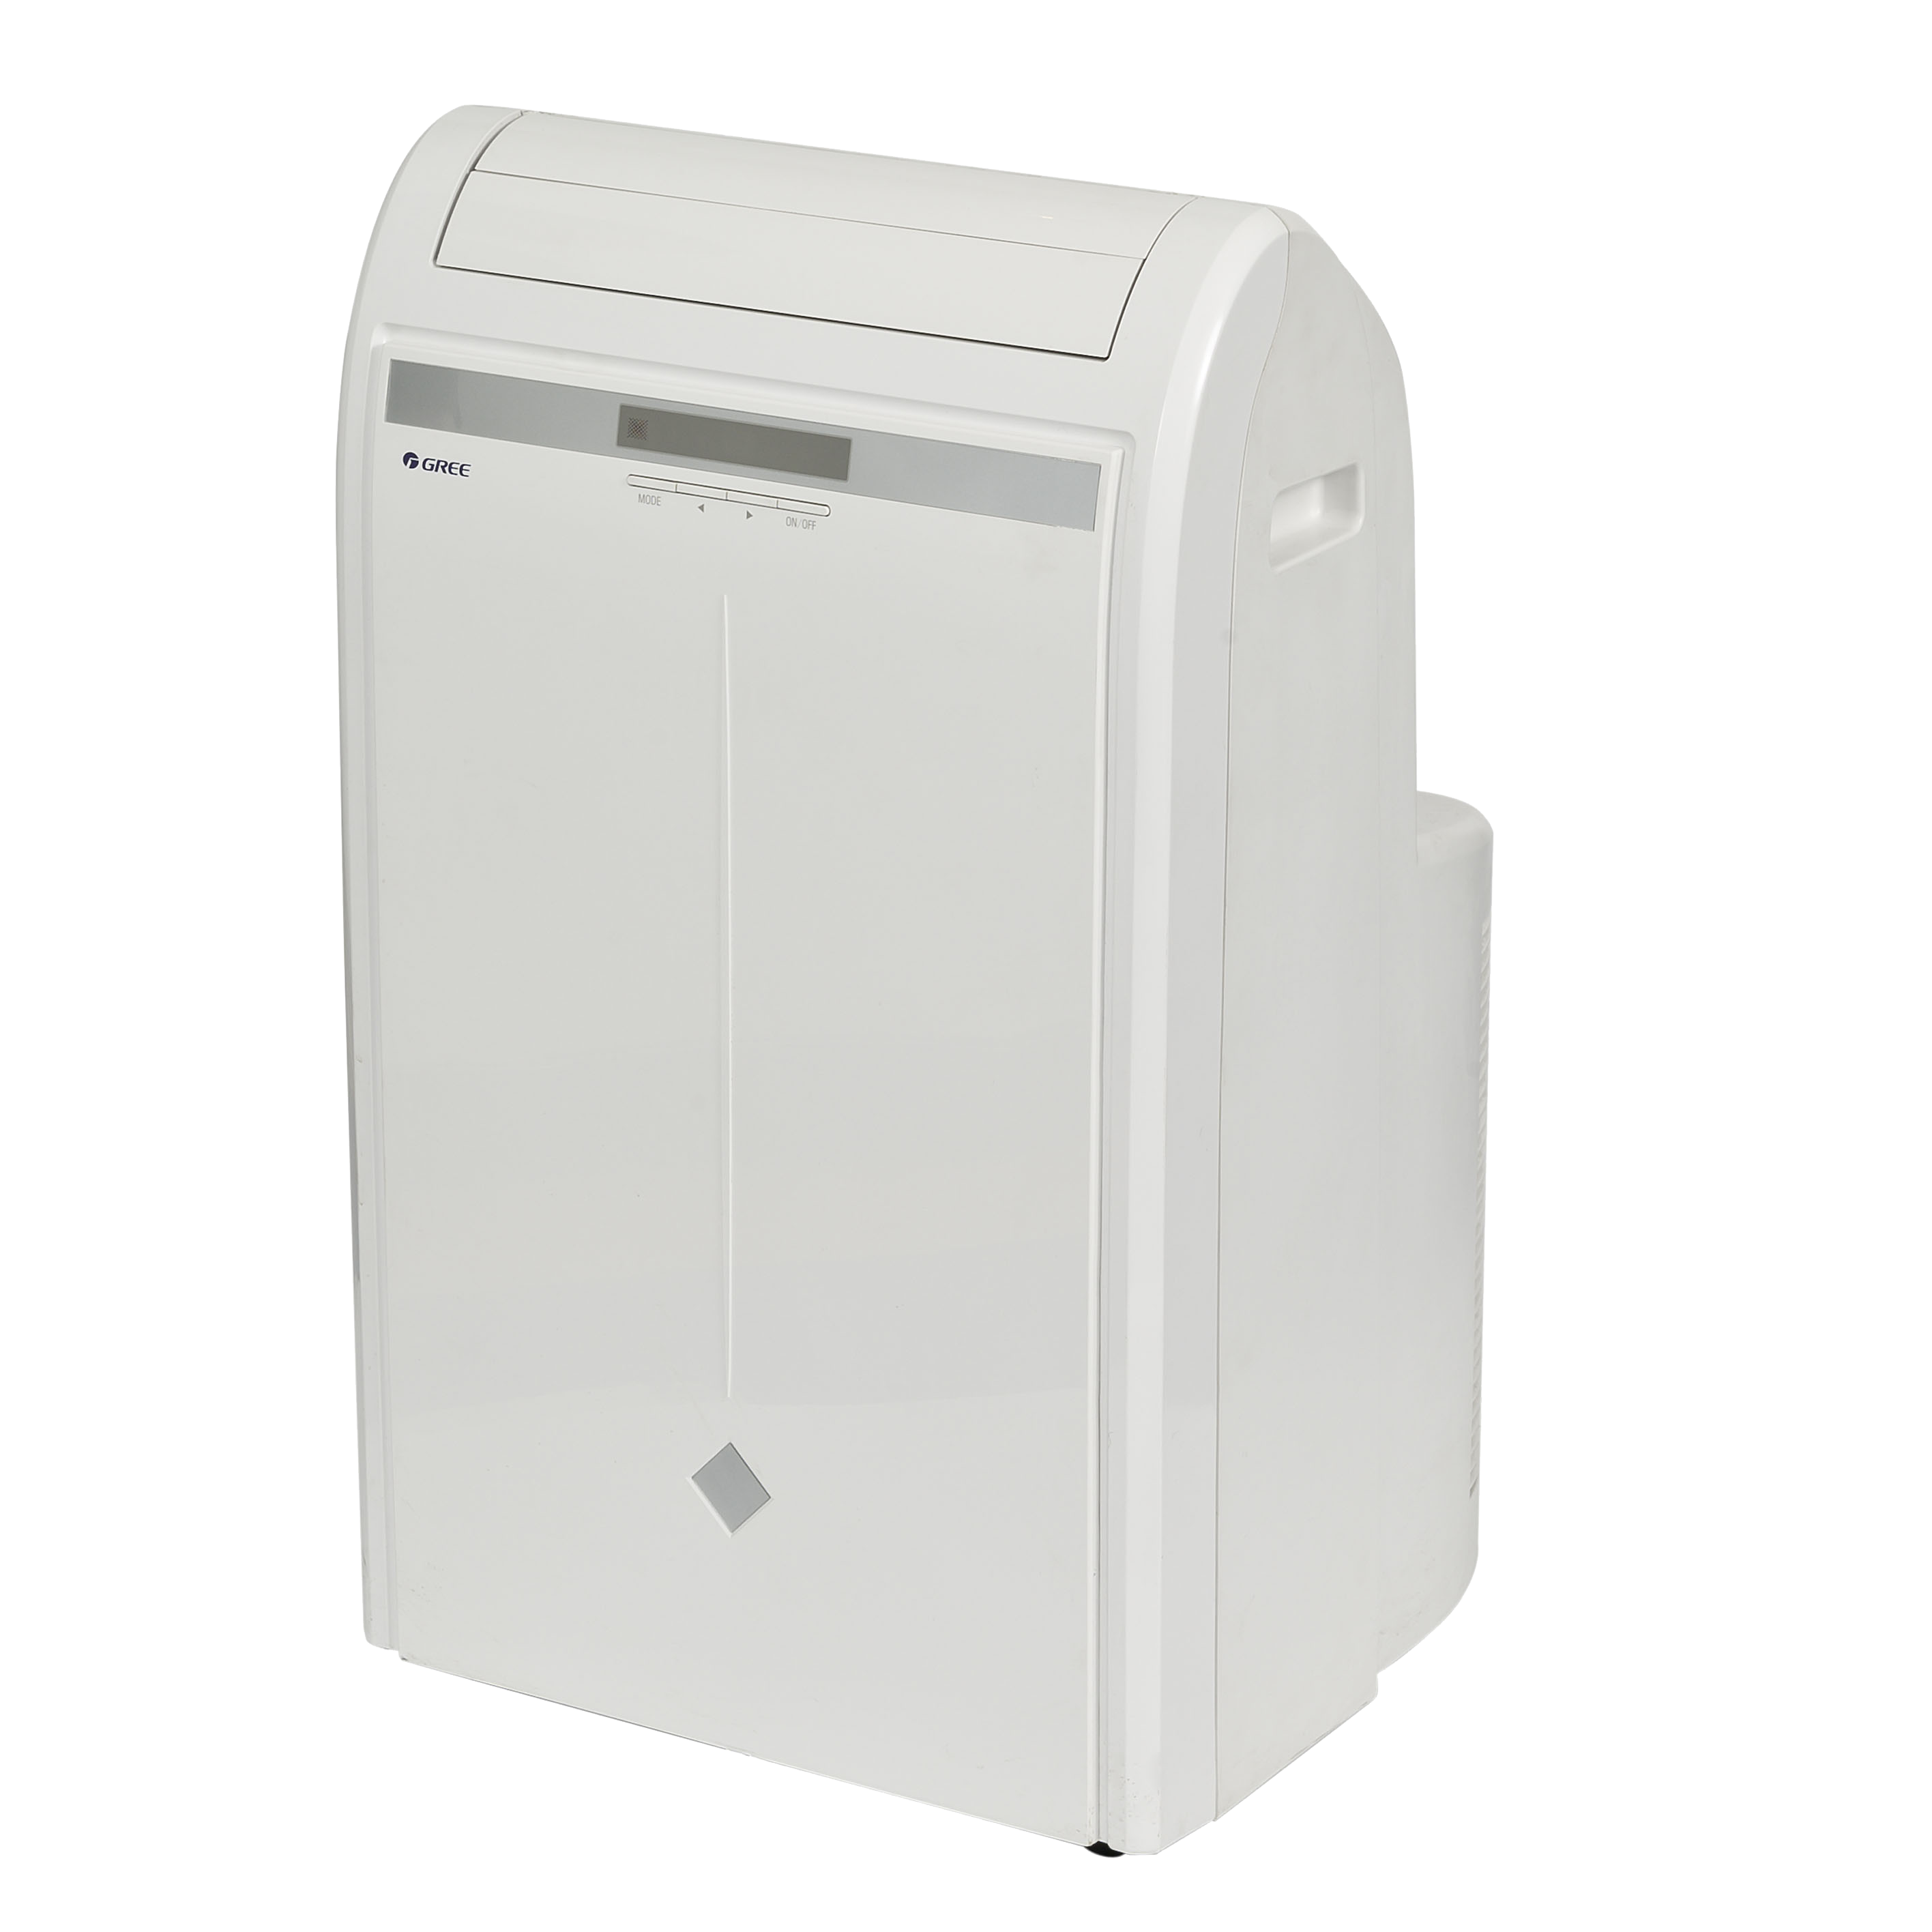 EasyCool 3.5kW Portable air conditioner